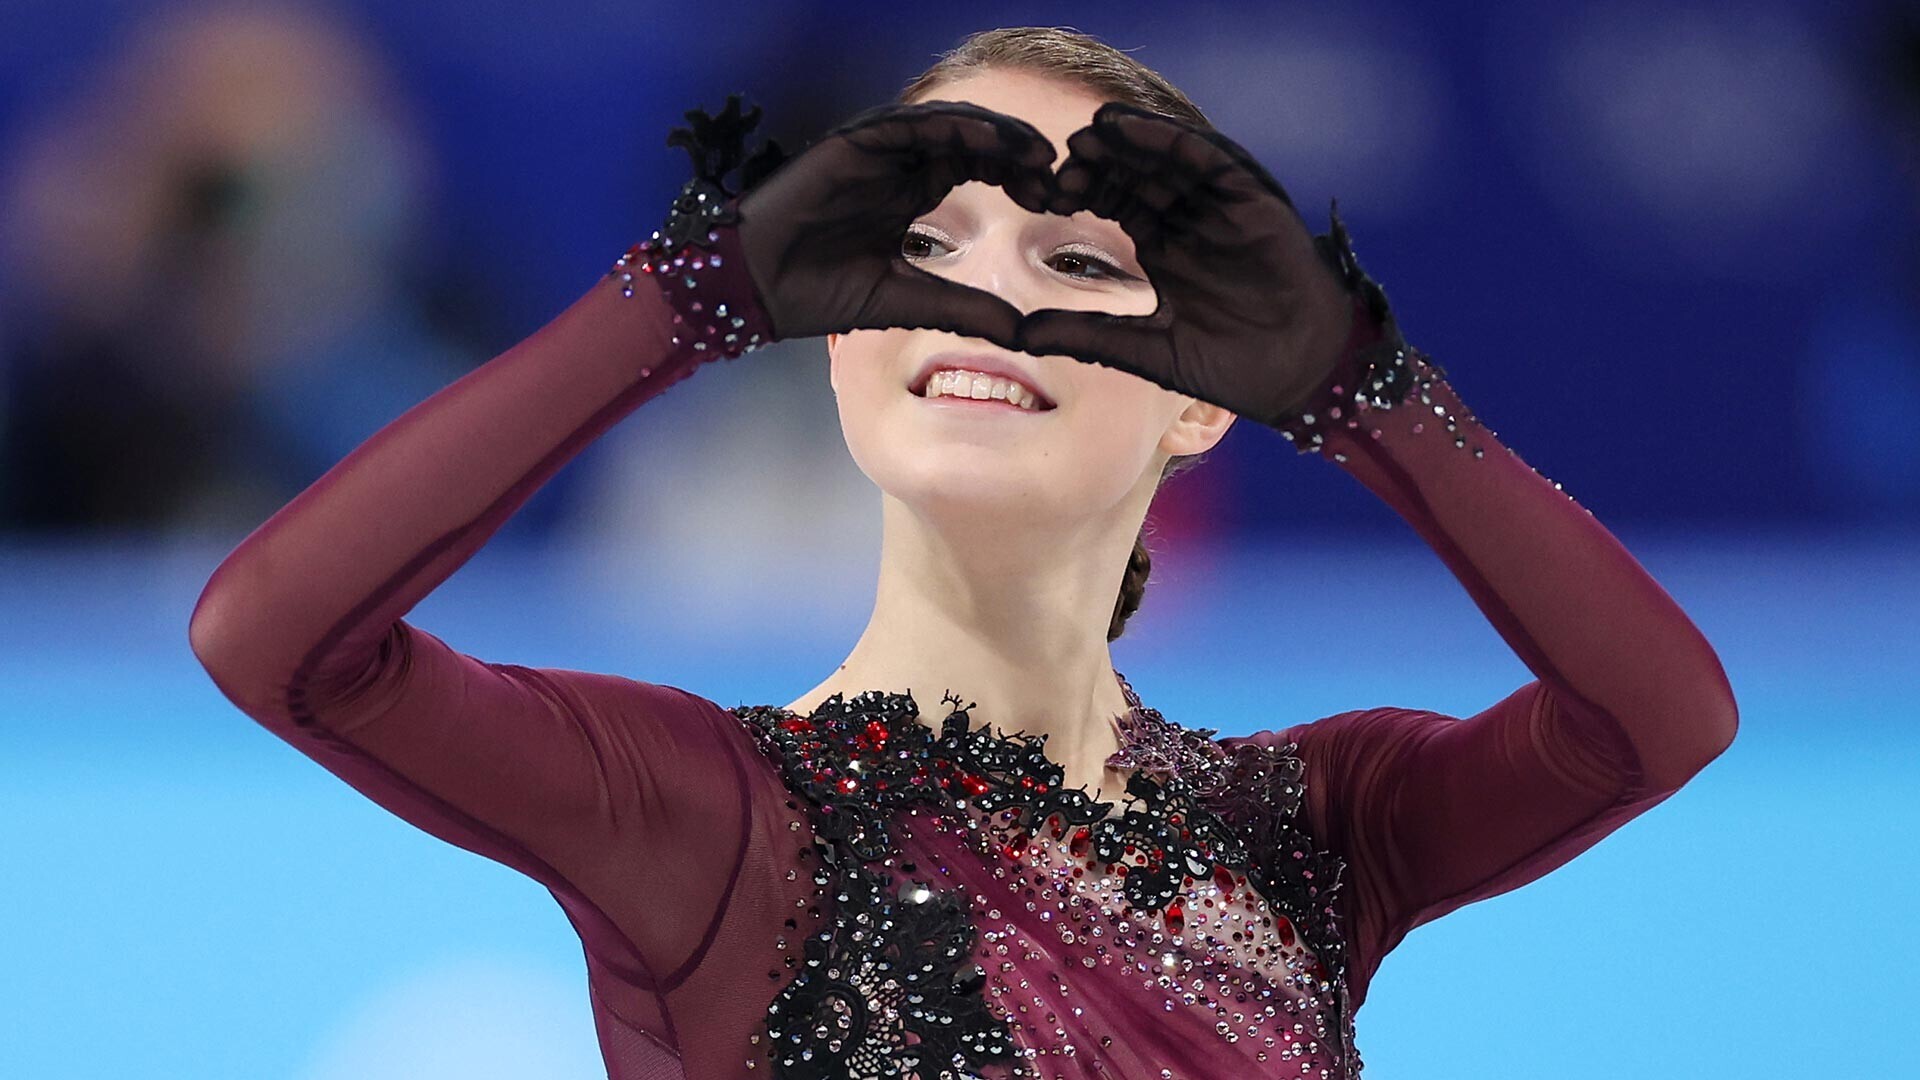 Campeã olímpica de 2022 Anna Scherbakova
